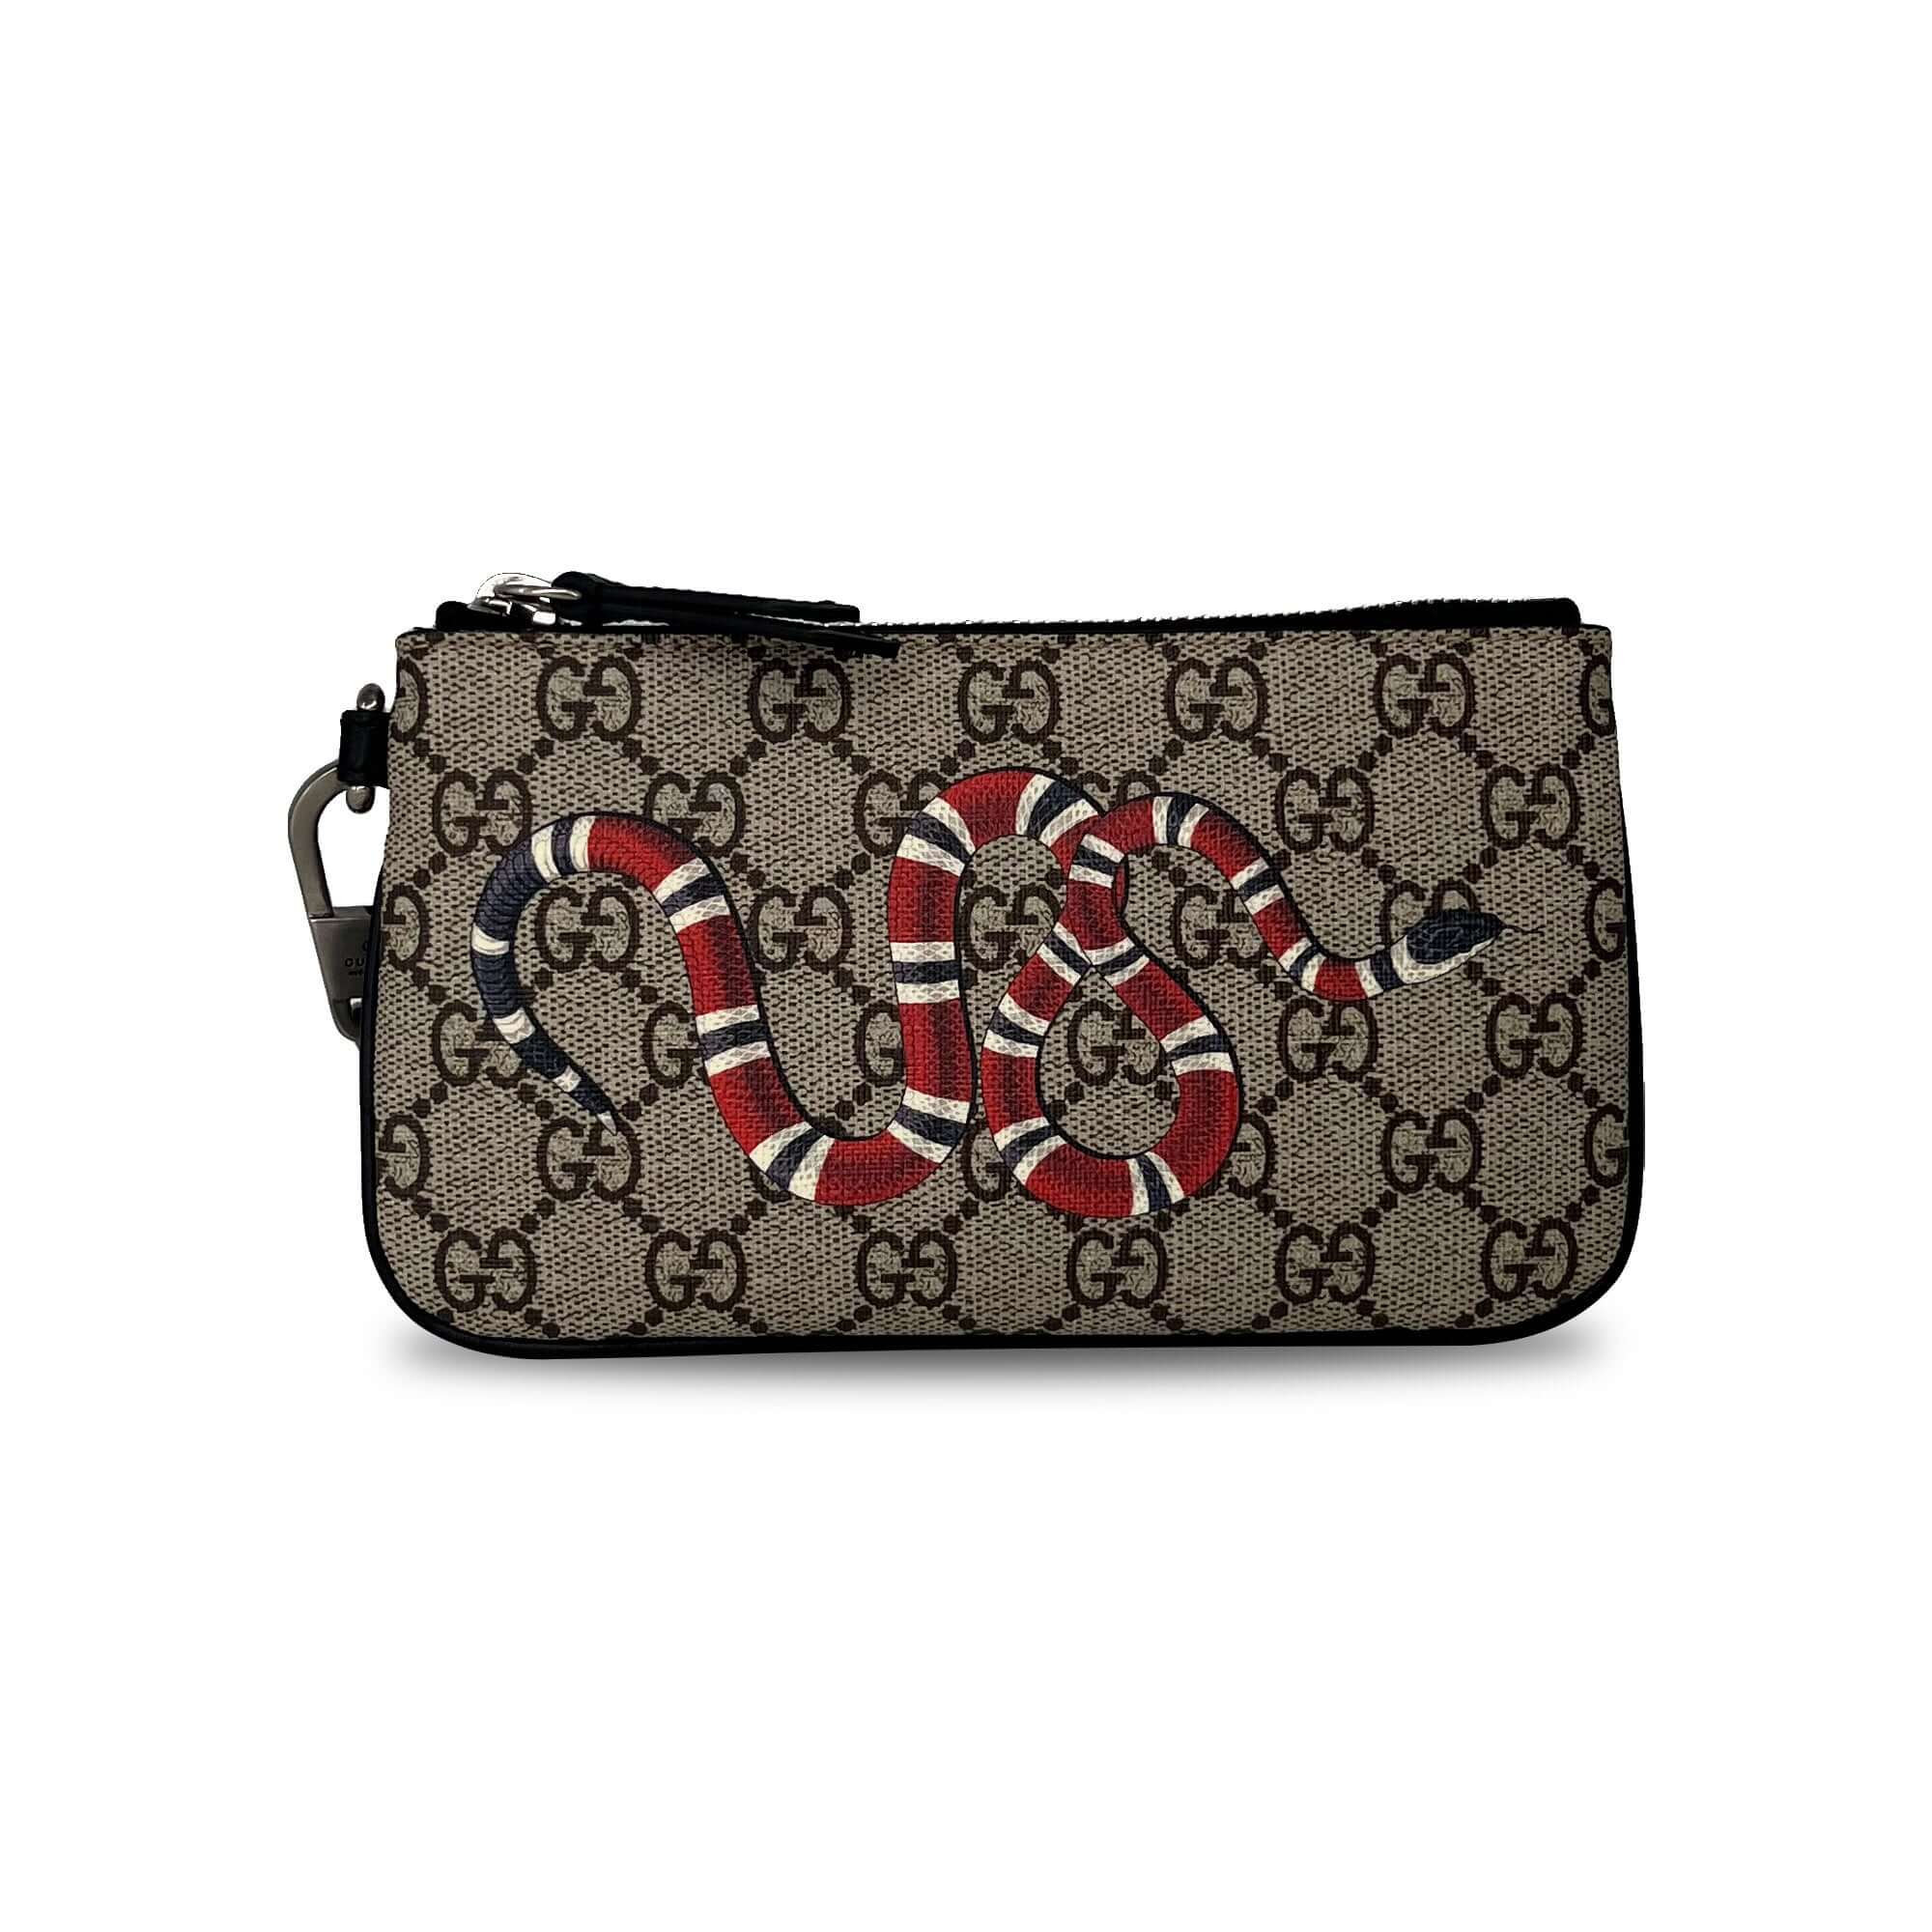 Gucci snake print GG supreme zip around wallet